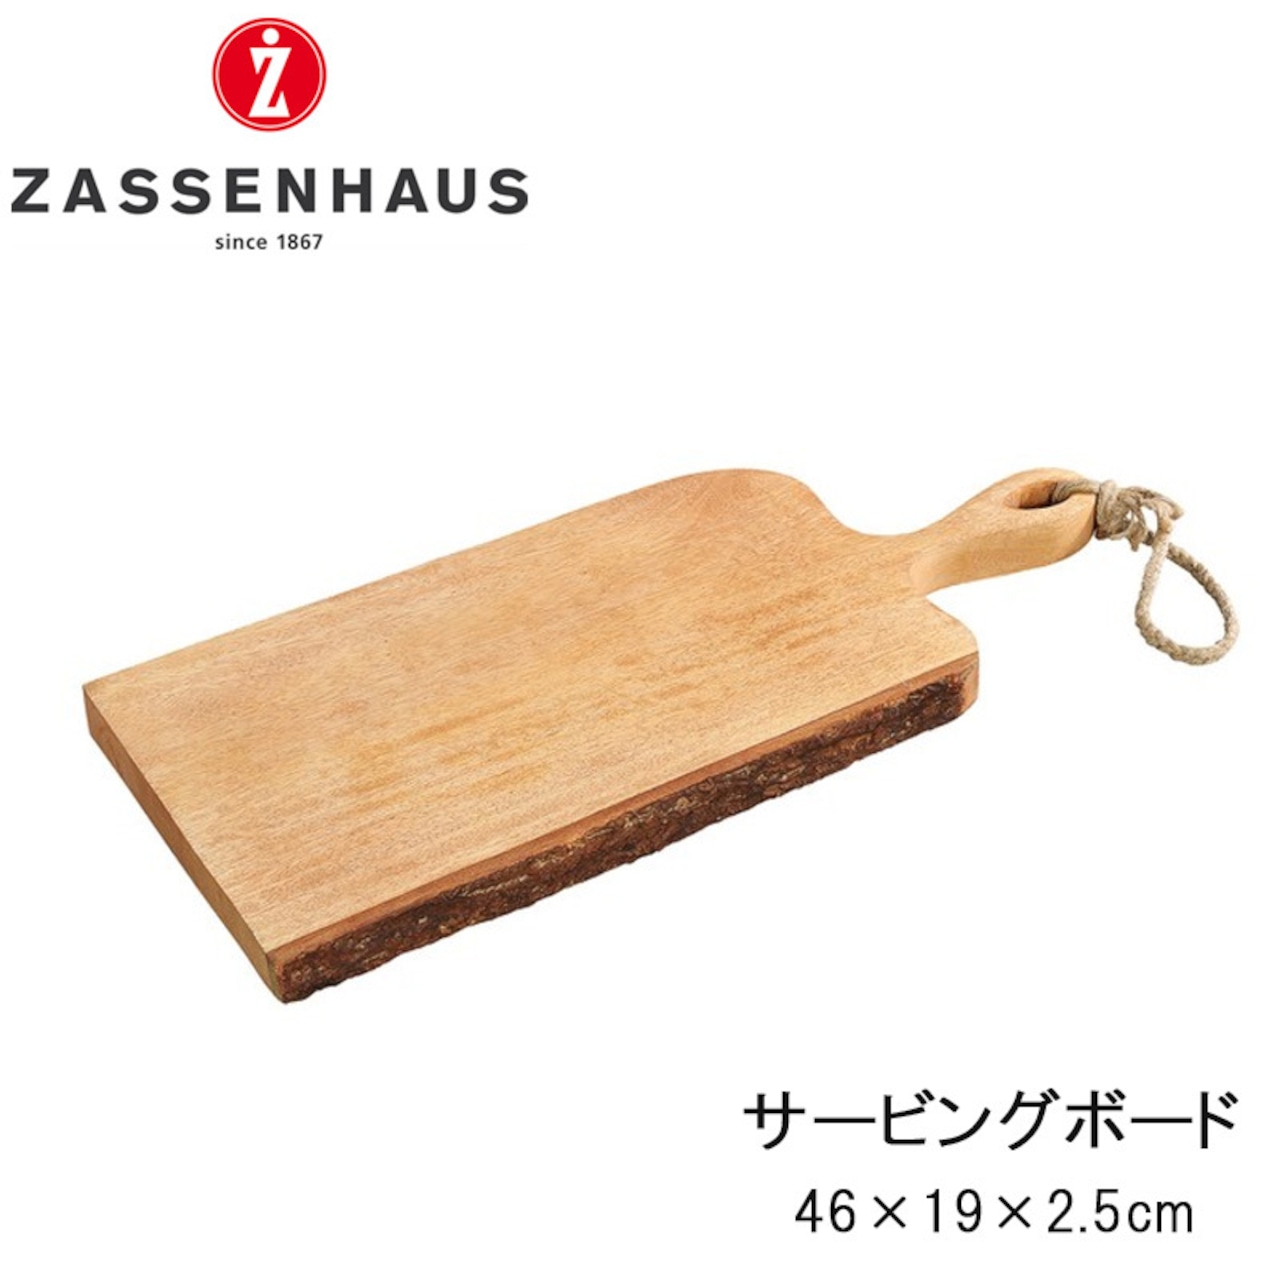 ZASSENHAUS ザッセンハウス ハンドル付き サービングボード マンゴーウッド 46cm まな板 キャンプ アウトドア 用品 グッズ